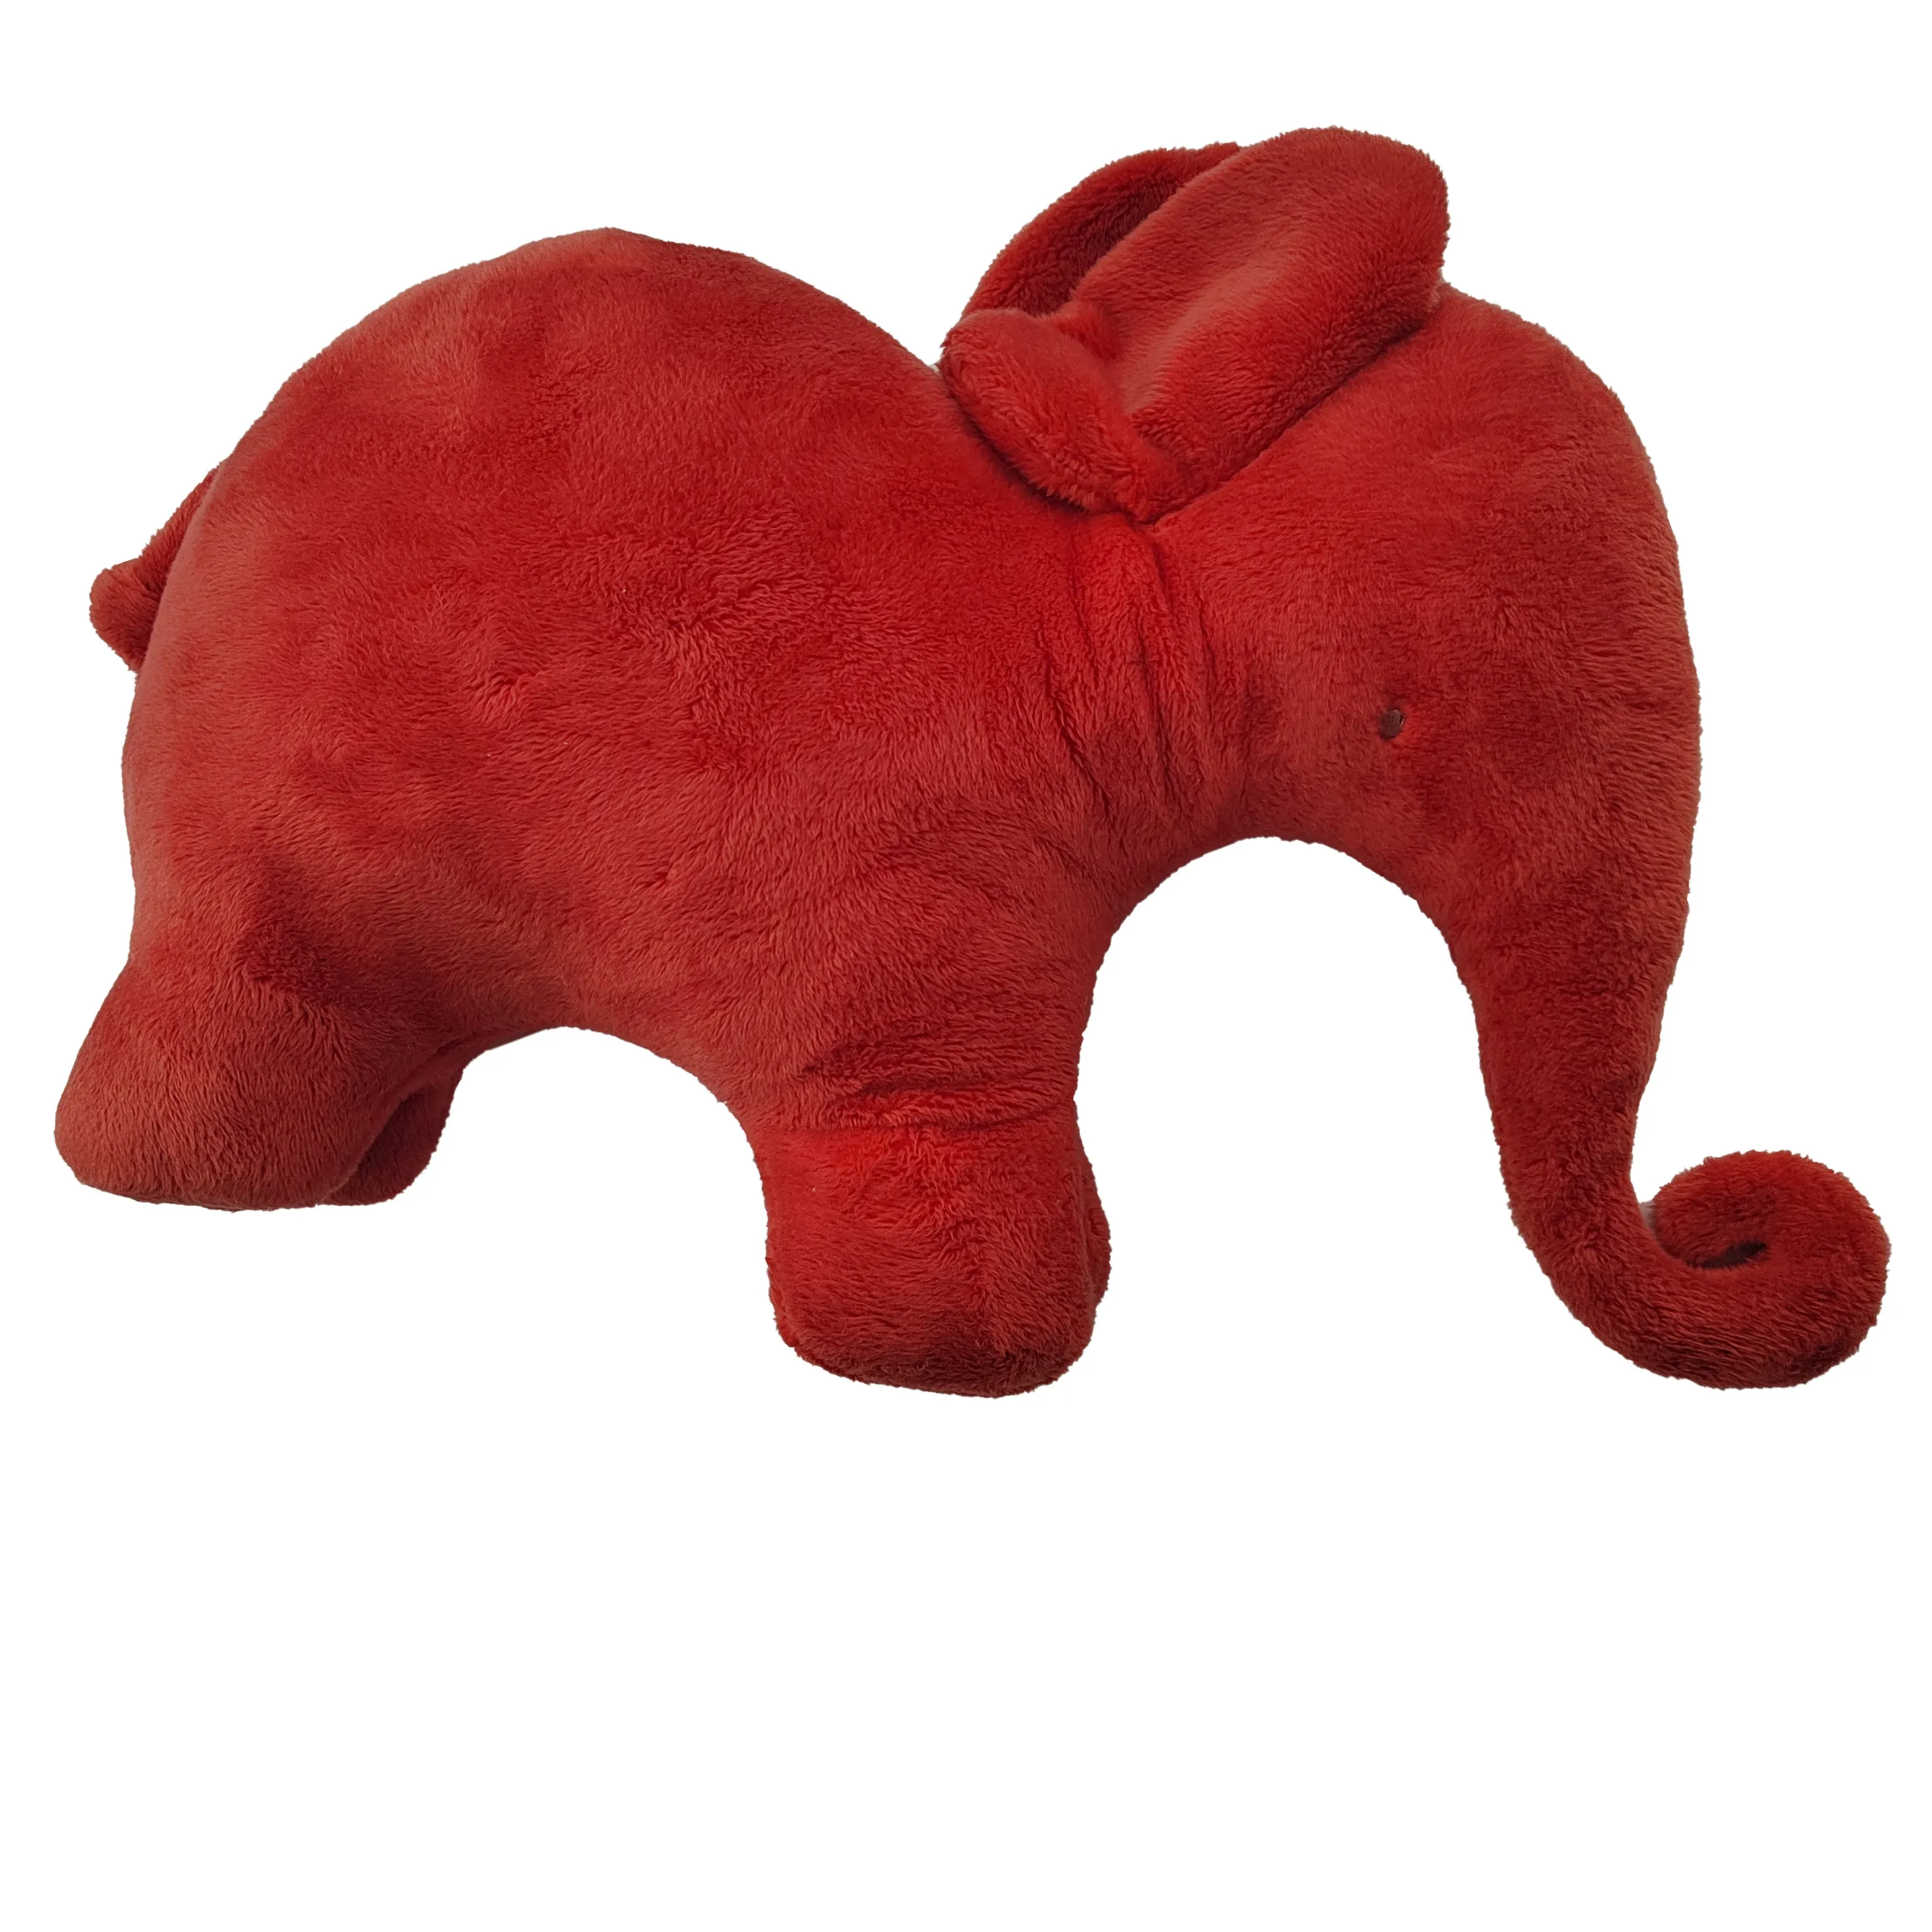 Mainan boneka beruang merah lucu ukuran besar lembut dapat diisi dengan bayi mainan boneka hewan antihilang